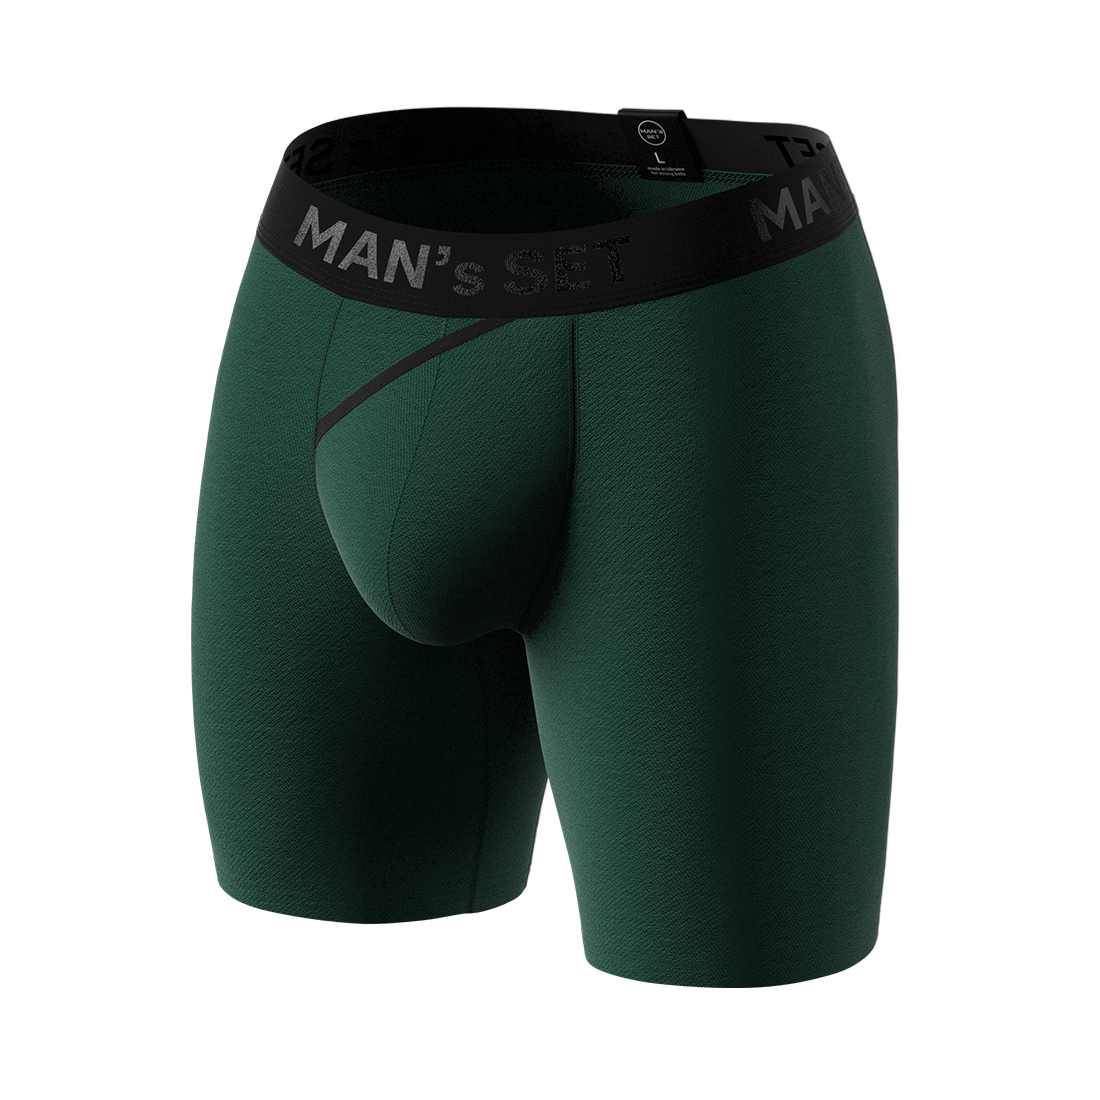 Мужские анатомические боксеры из хлопка, Anatomic Long 2.0, Black Series, тёмно-зелёный MansSet